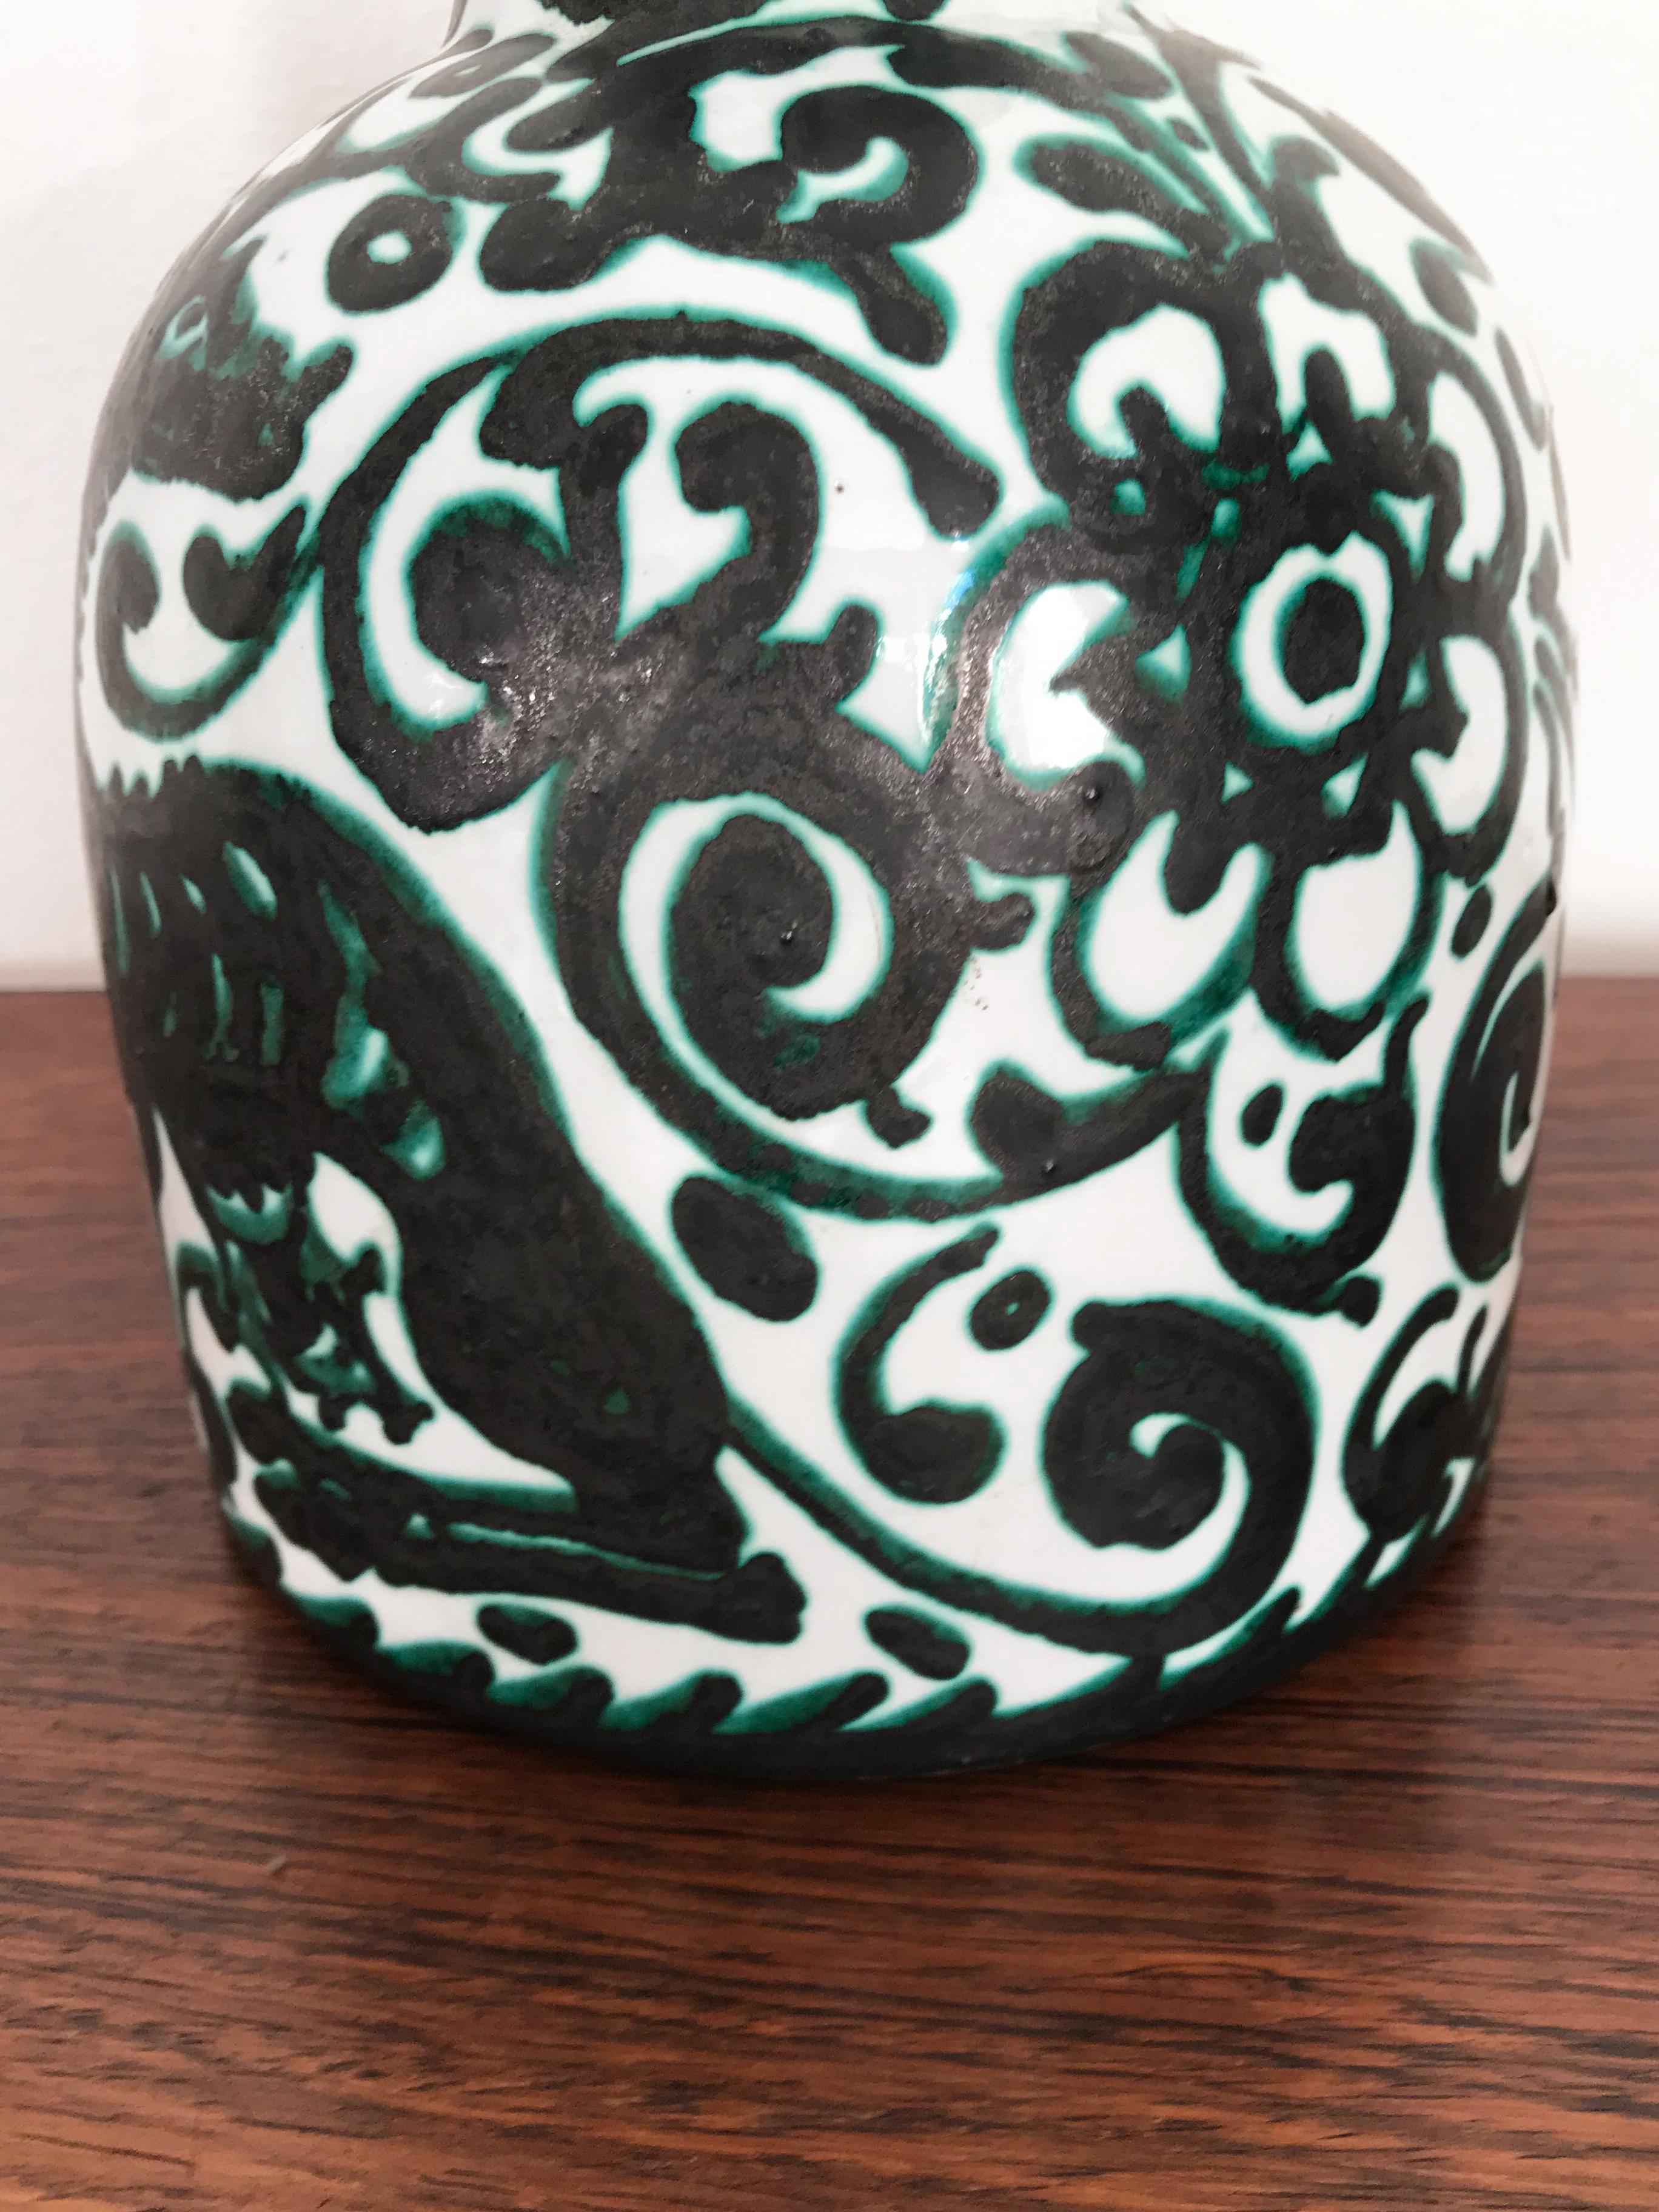 Italian Guerrieri Murano Midcentury Ceramic Hand Made Decorated Vase 1950s In Good Condition For Sale In Reggio Emilia, IT